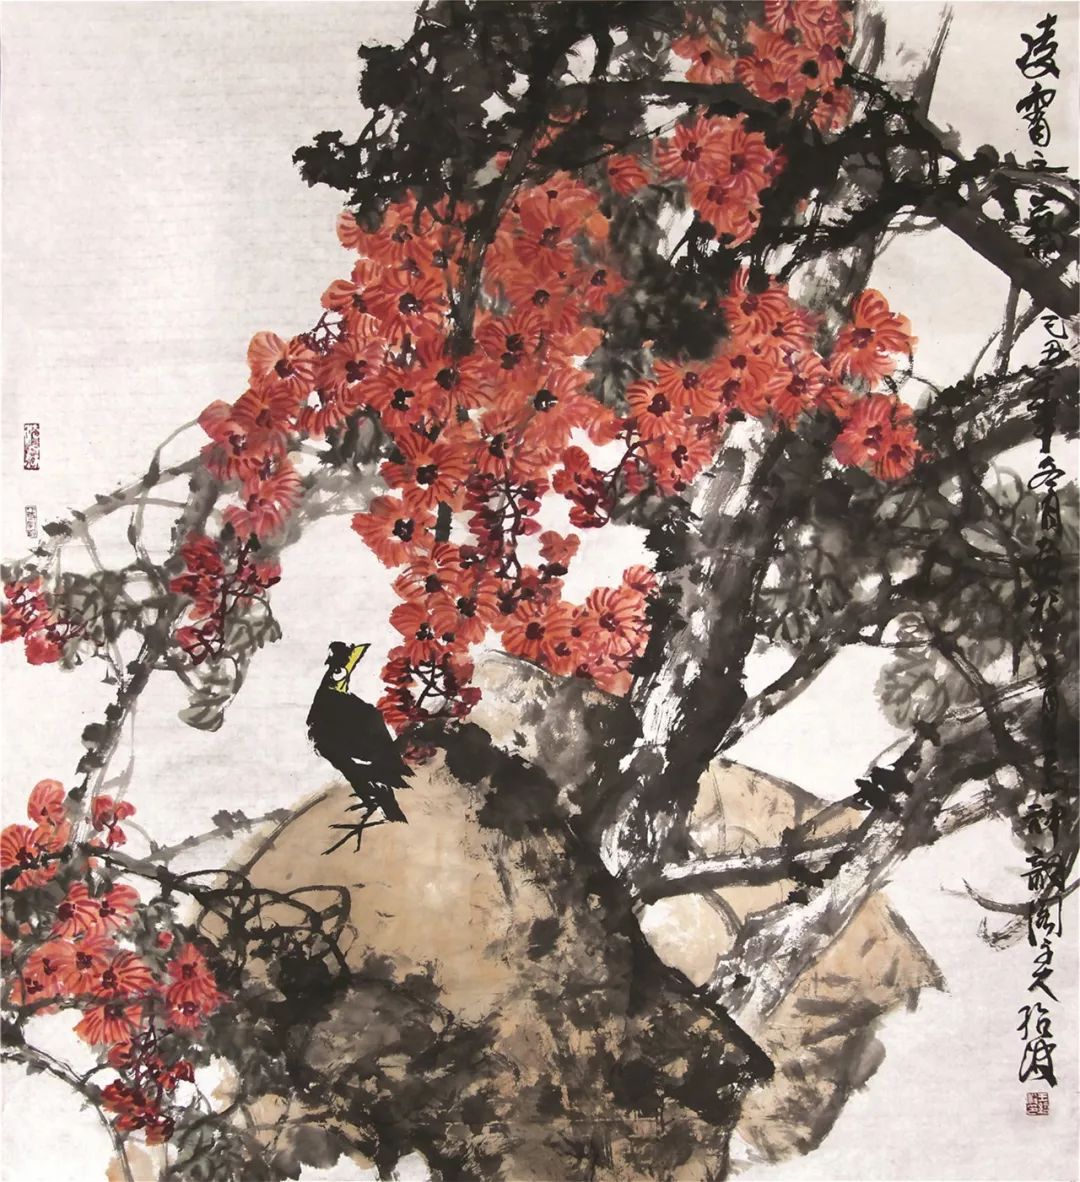 融西於中王绍波先生中国水彩画的艺术探索